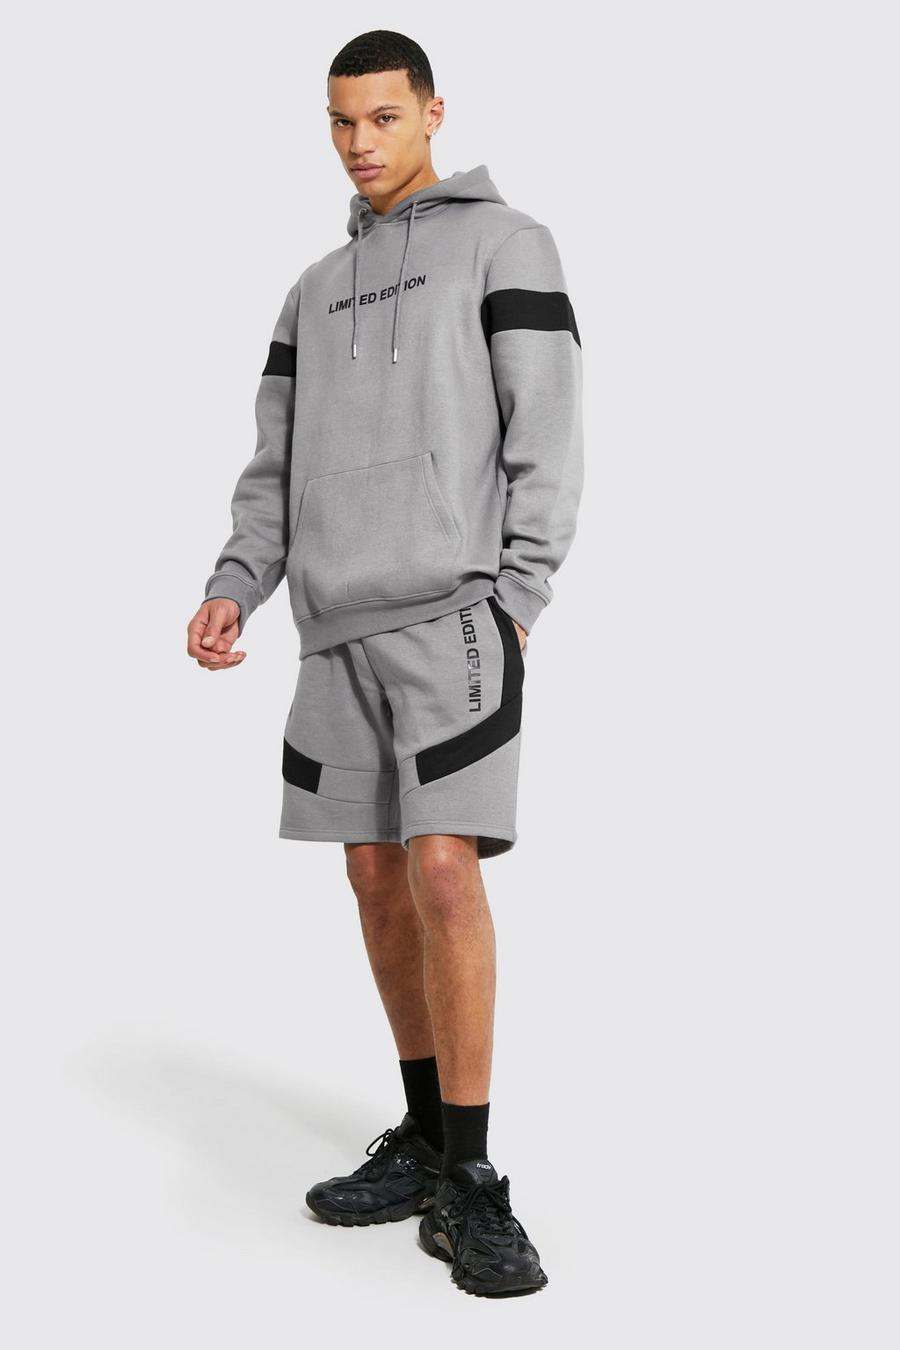 Chándal Tall Limited Edition de pantalón corto con colores en bloque, Dark grey grigio